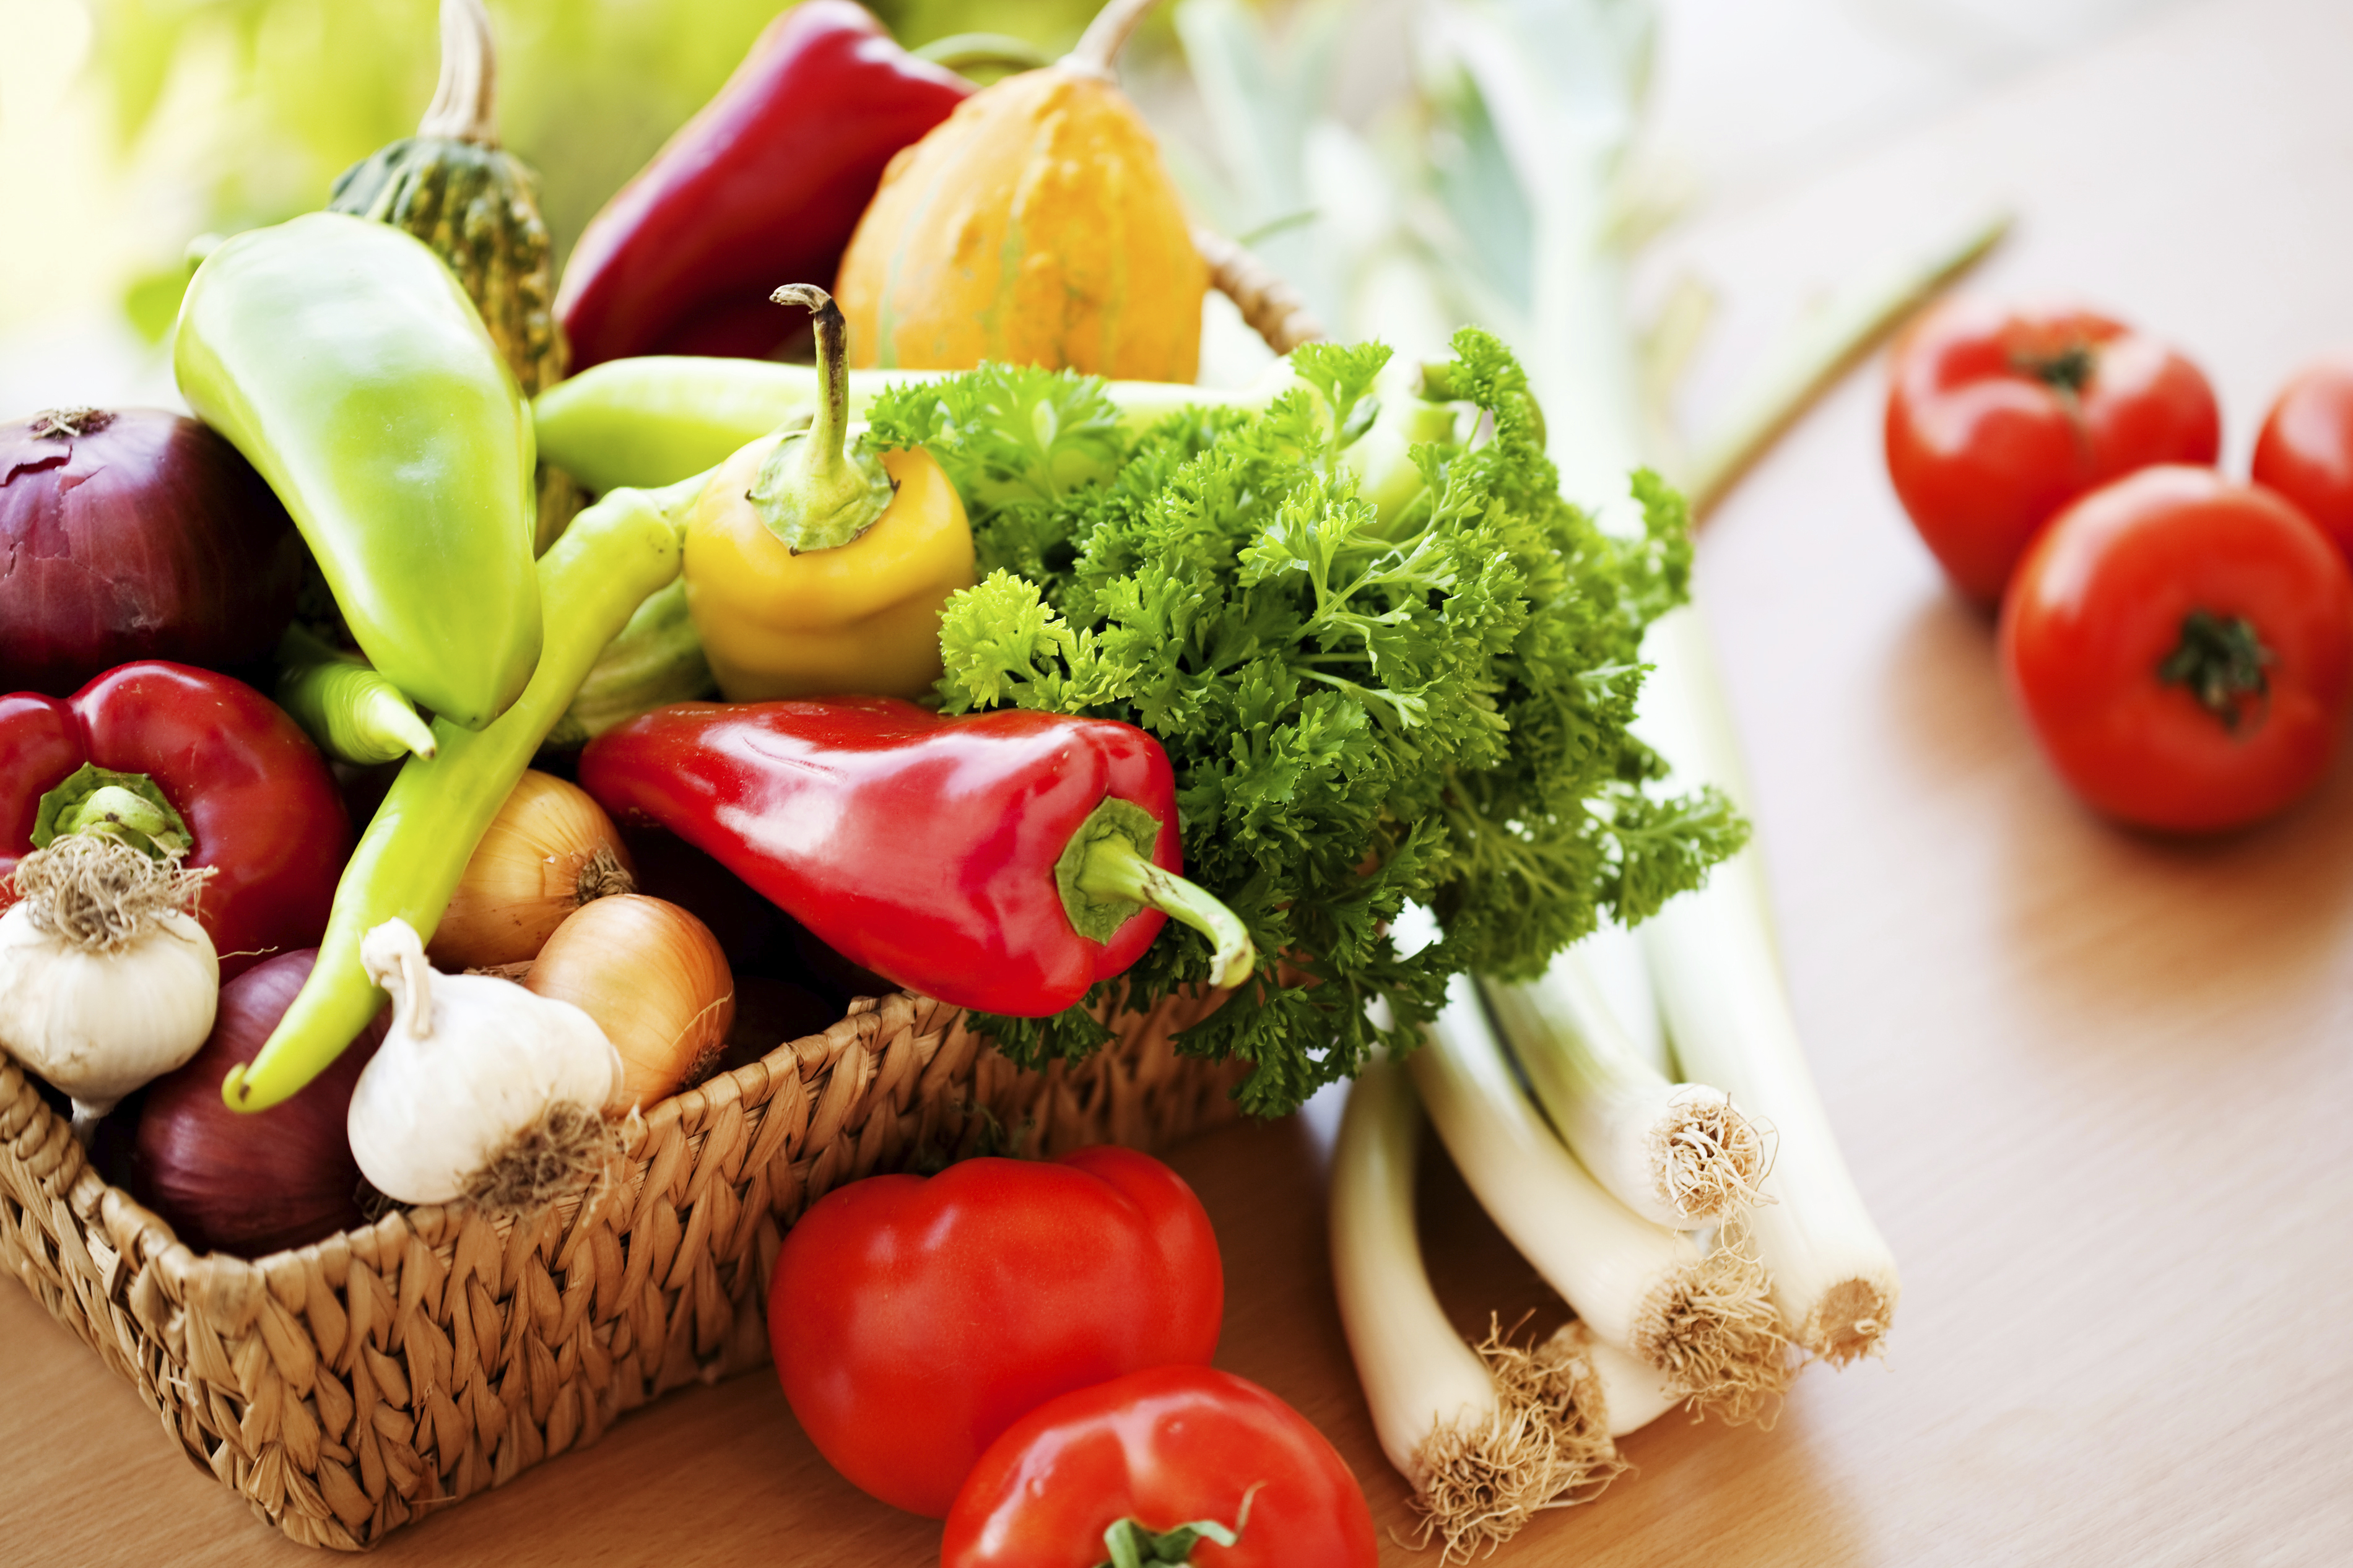 Les légumes et fruits secs dopés au « healthy »